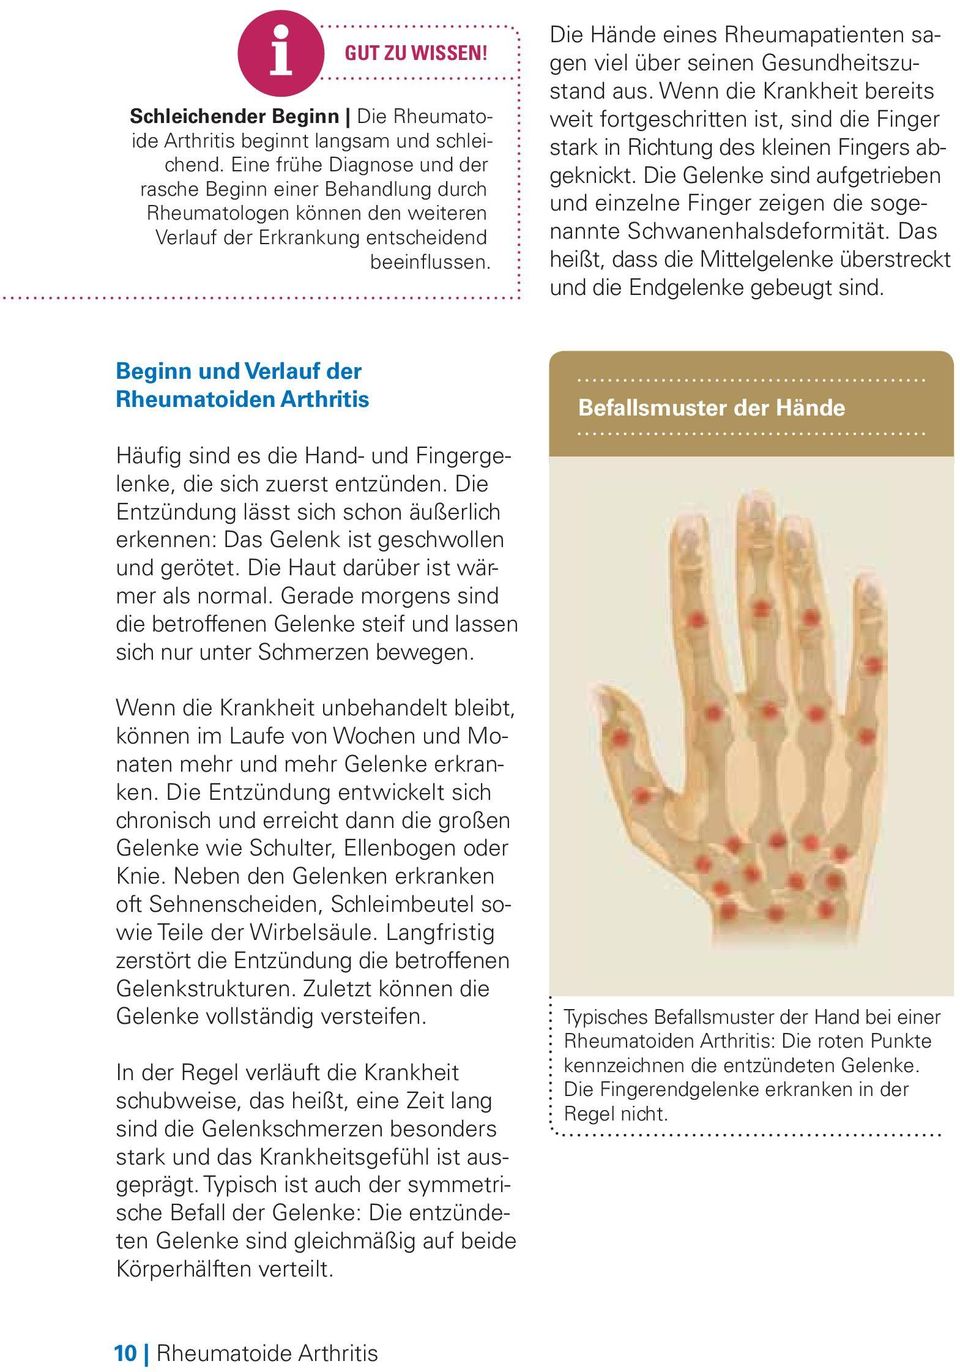 Die Hände eines Rheumapatienten sagen viel über seinen Gesundheitszustand aus. Wenn die Krankheit bereits weit fortgeschritten ist, sind die Finger stark in Richtung des kleinen Fingers abgeknickt.